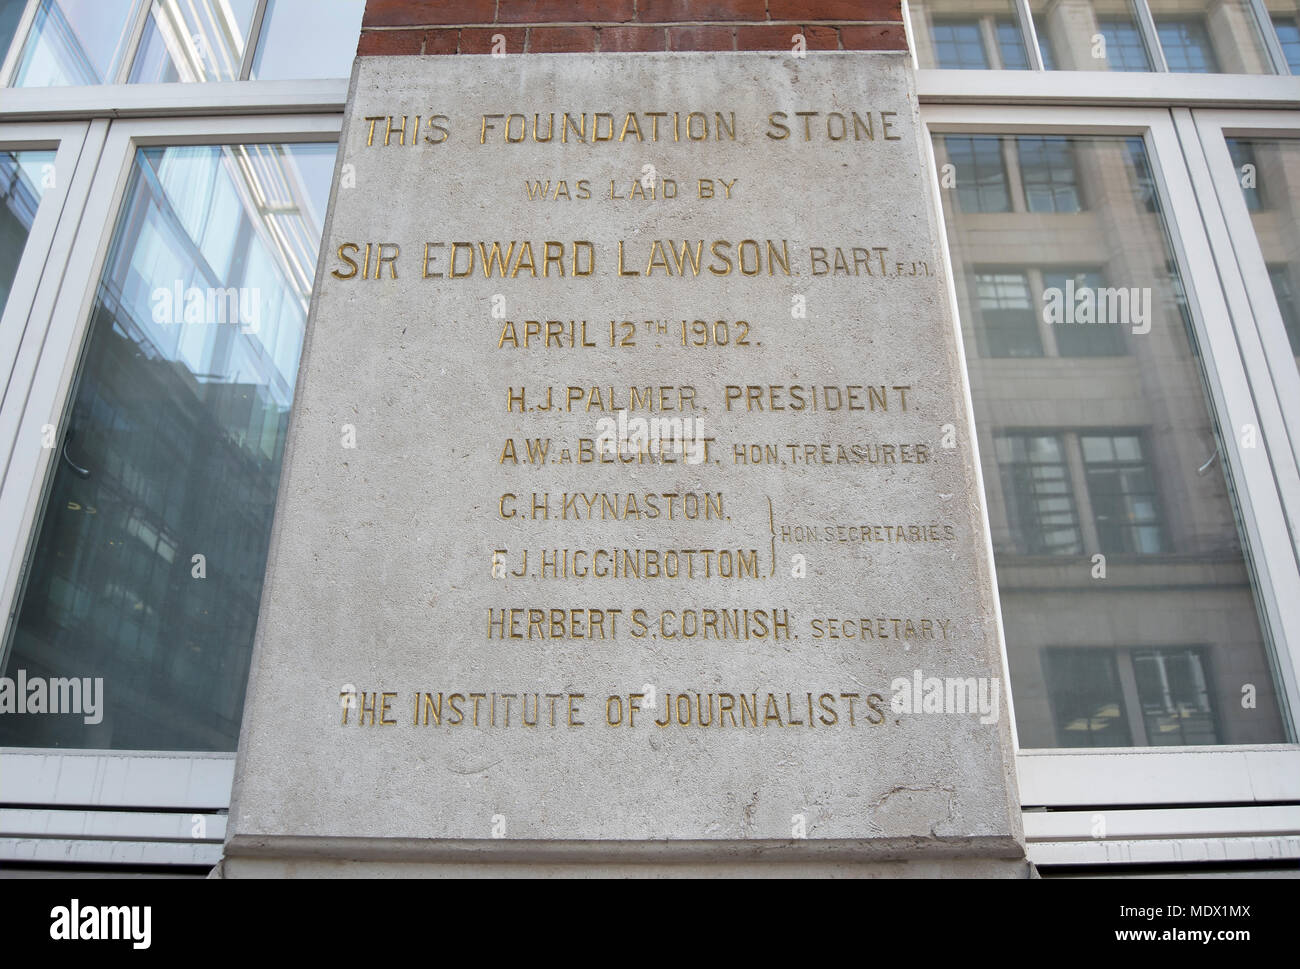 Pietra di fondazione prevista nel 1902 presso l'istituto di giornalisti edificio da sir Edward lawson, editor del Daily Telegraph di Londra, Inghilterra Foto Stock